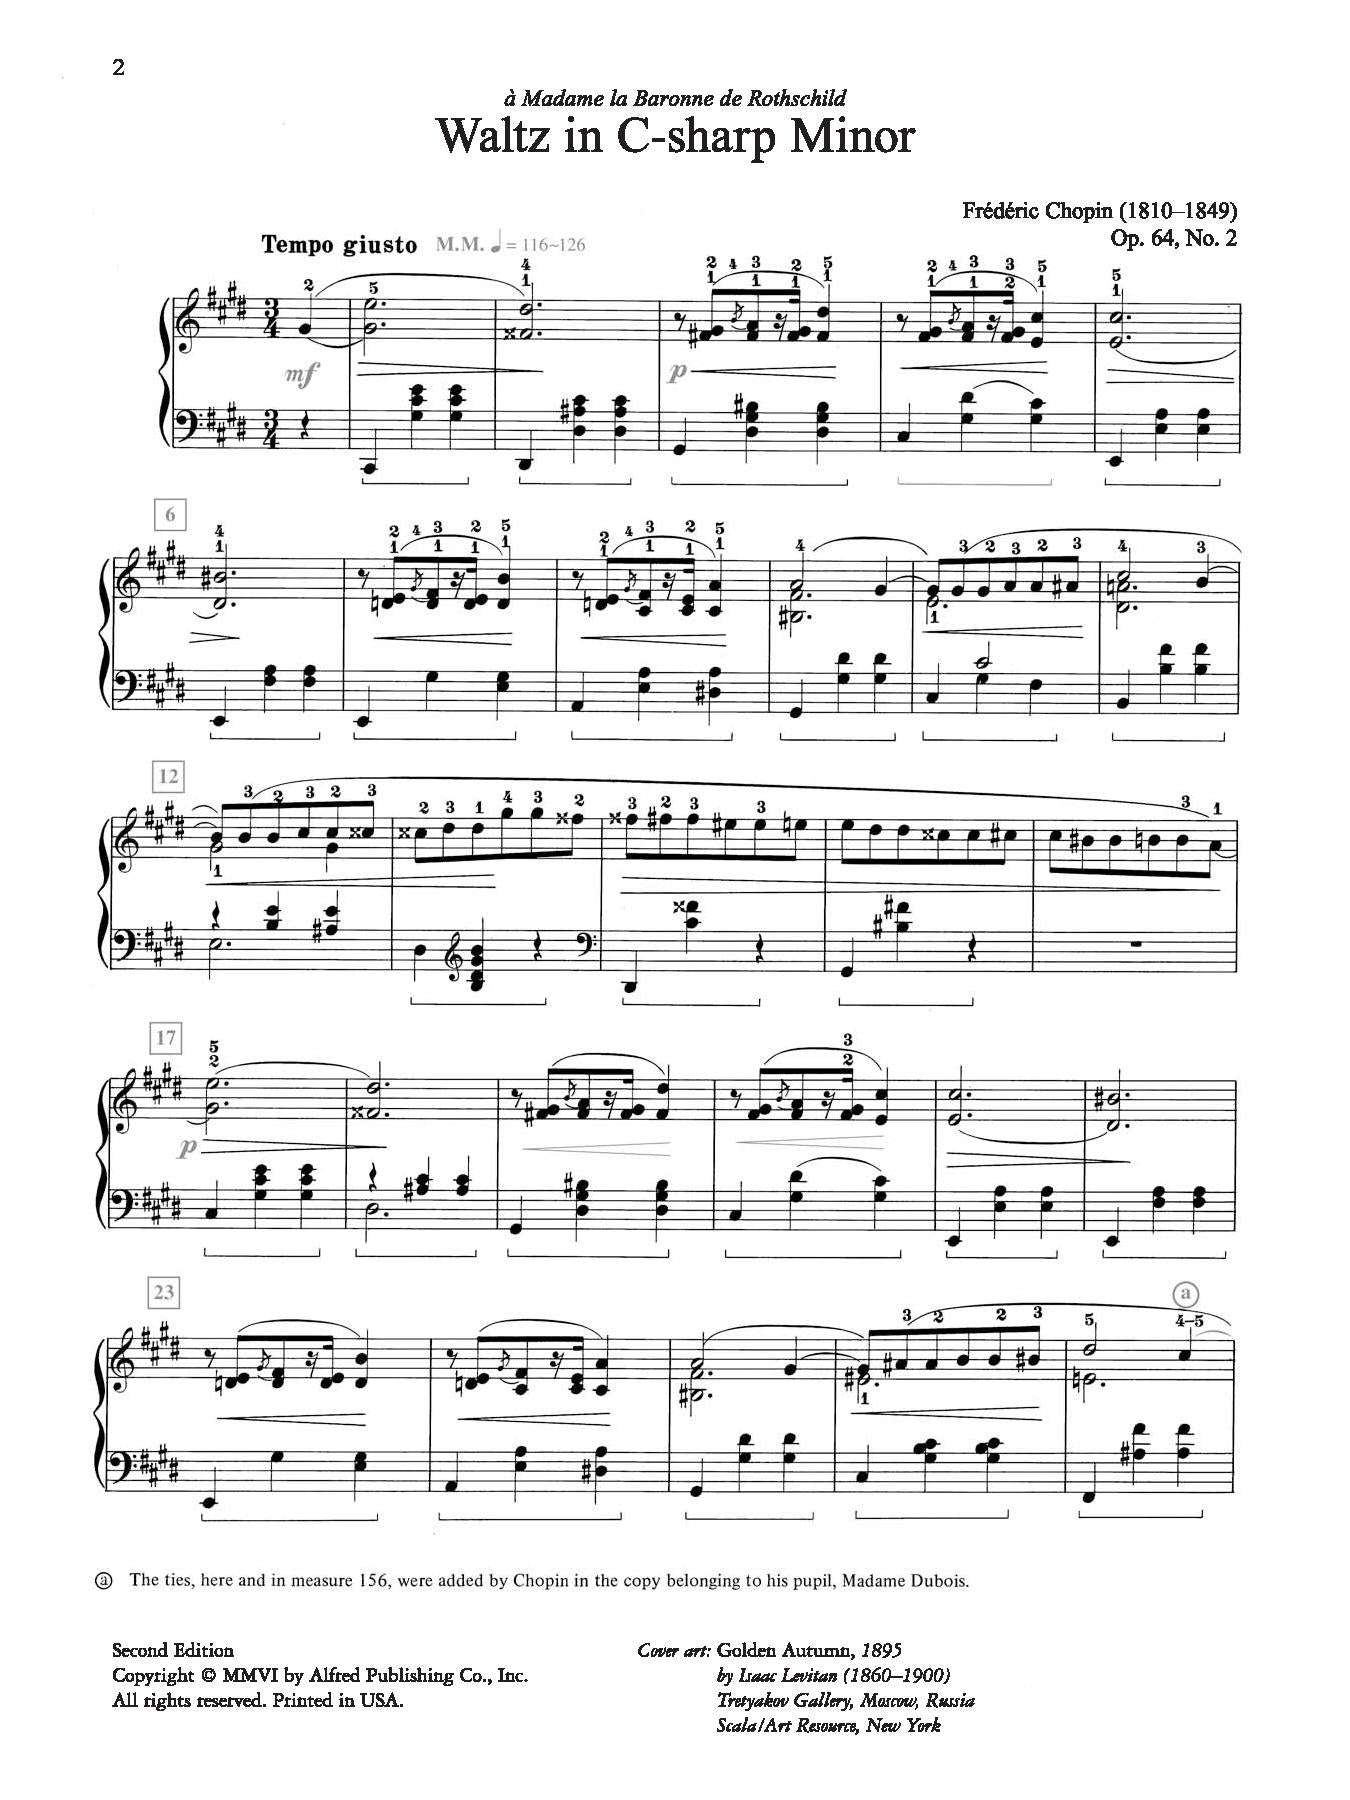 Chopin: Waltz in C-sharp Minor, Opus 64, No. 2